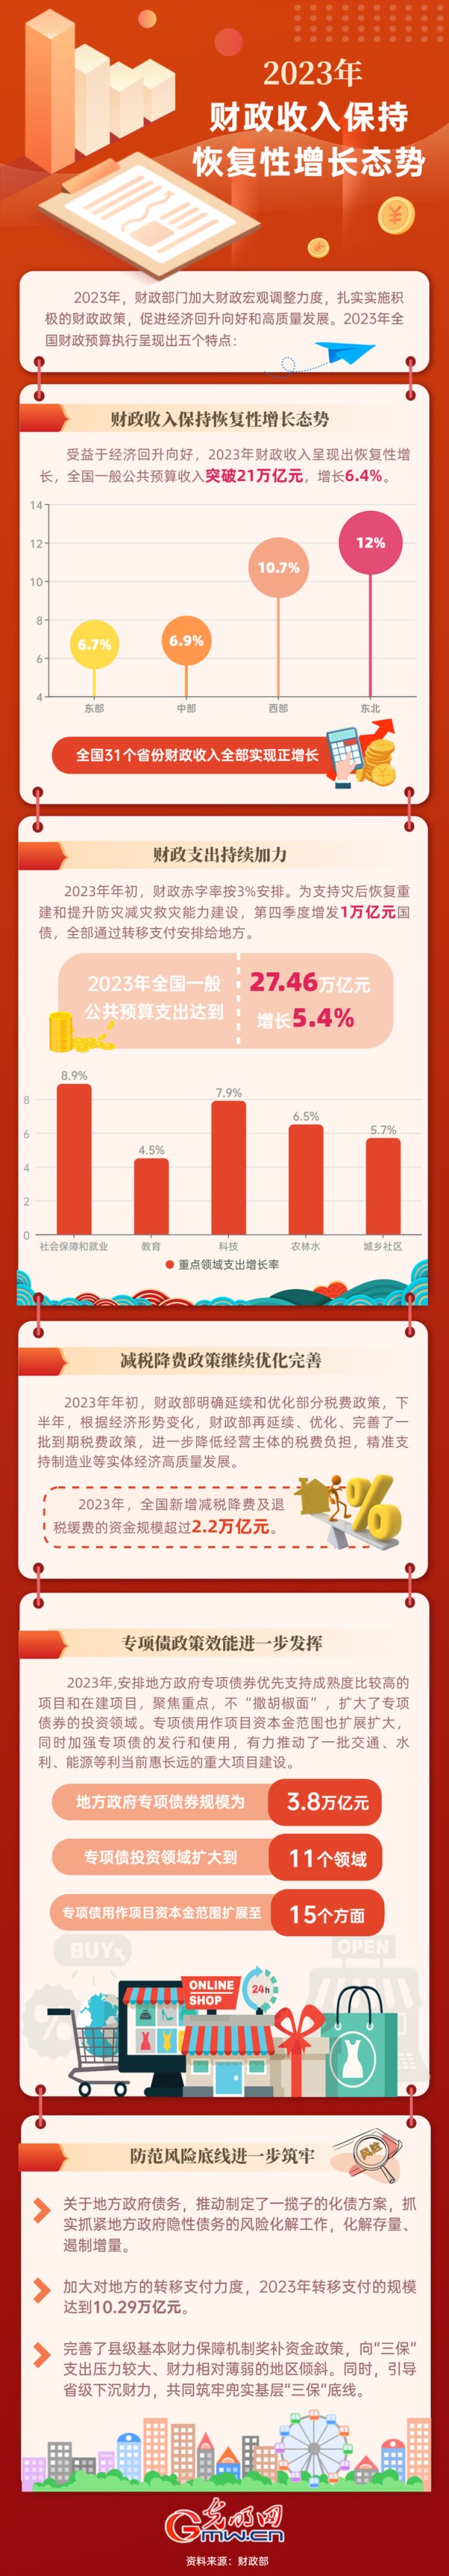 2023中国经济年报｜2023年财政收入保持恢复性增长态势